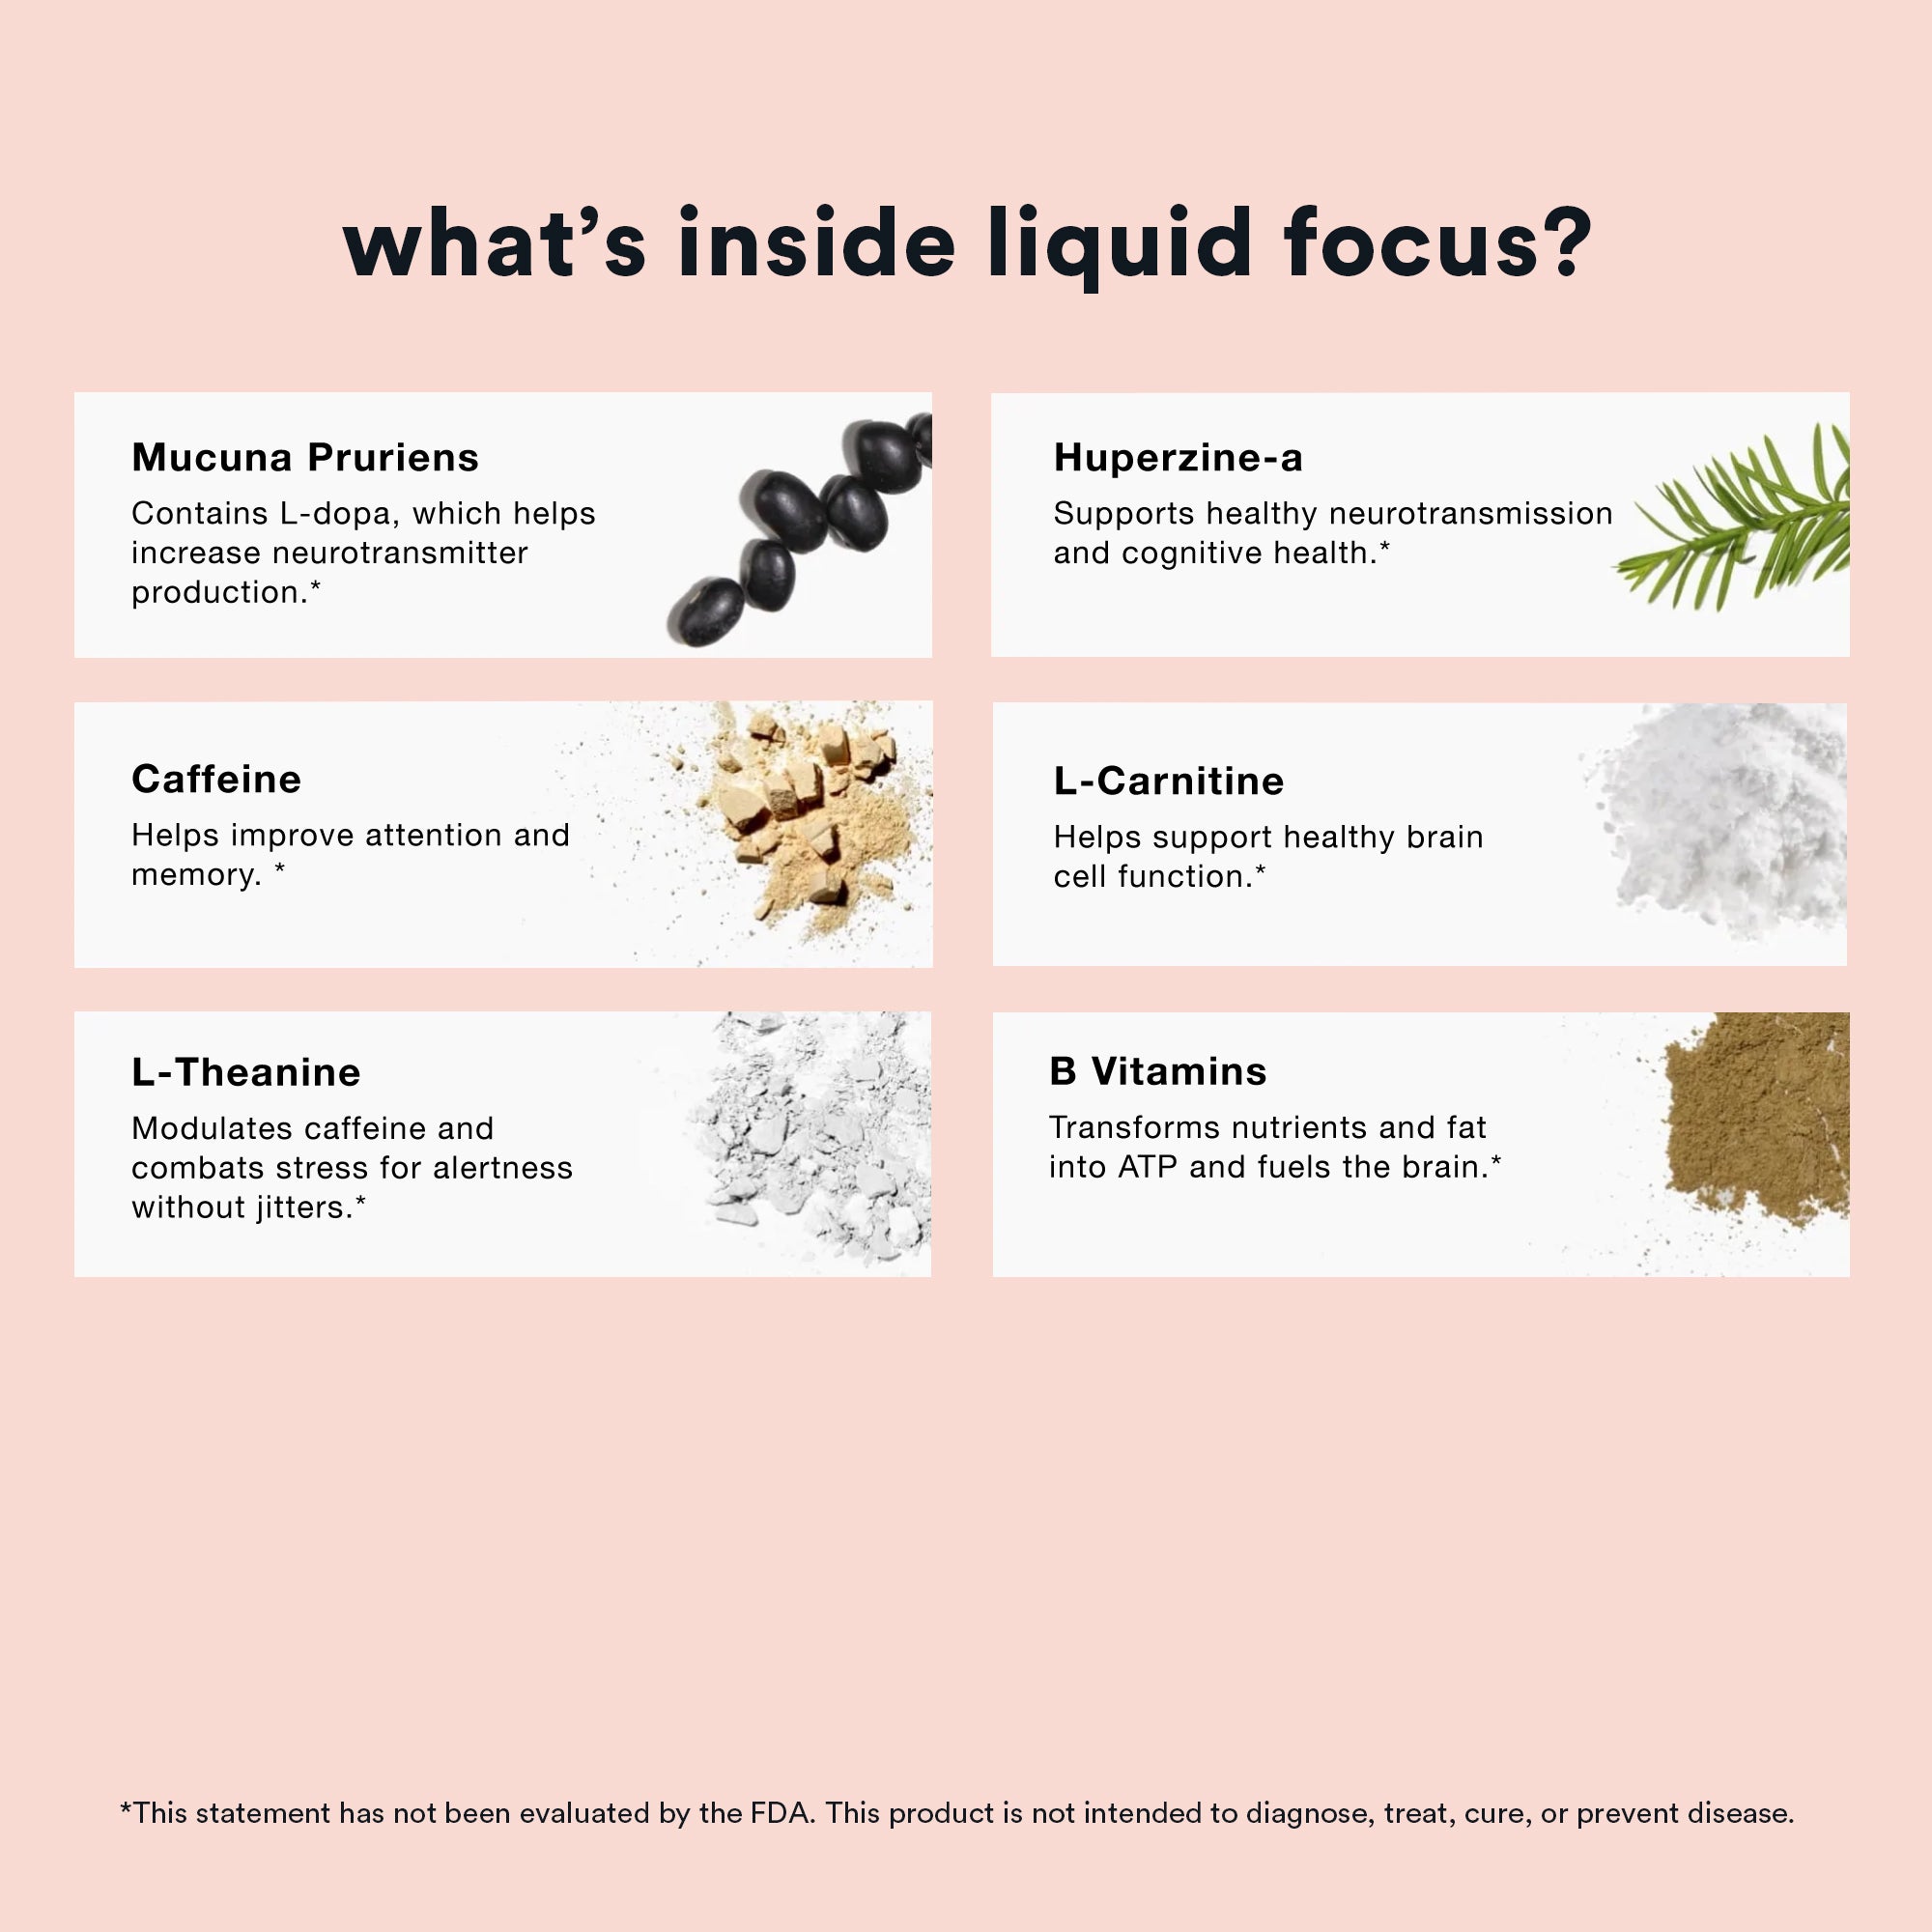 Whats insides liquid focus